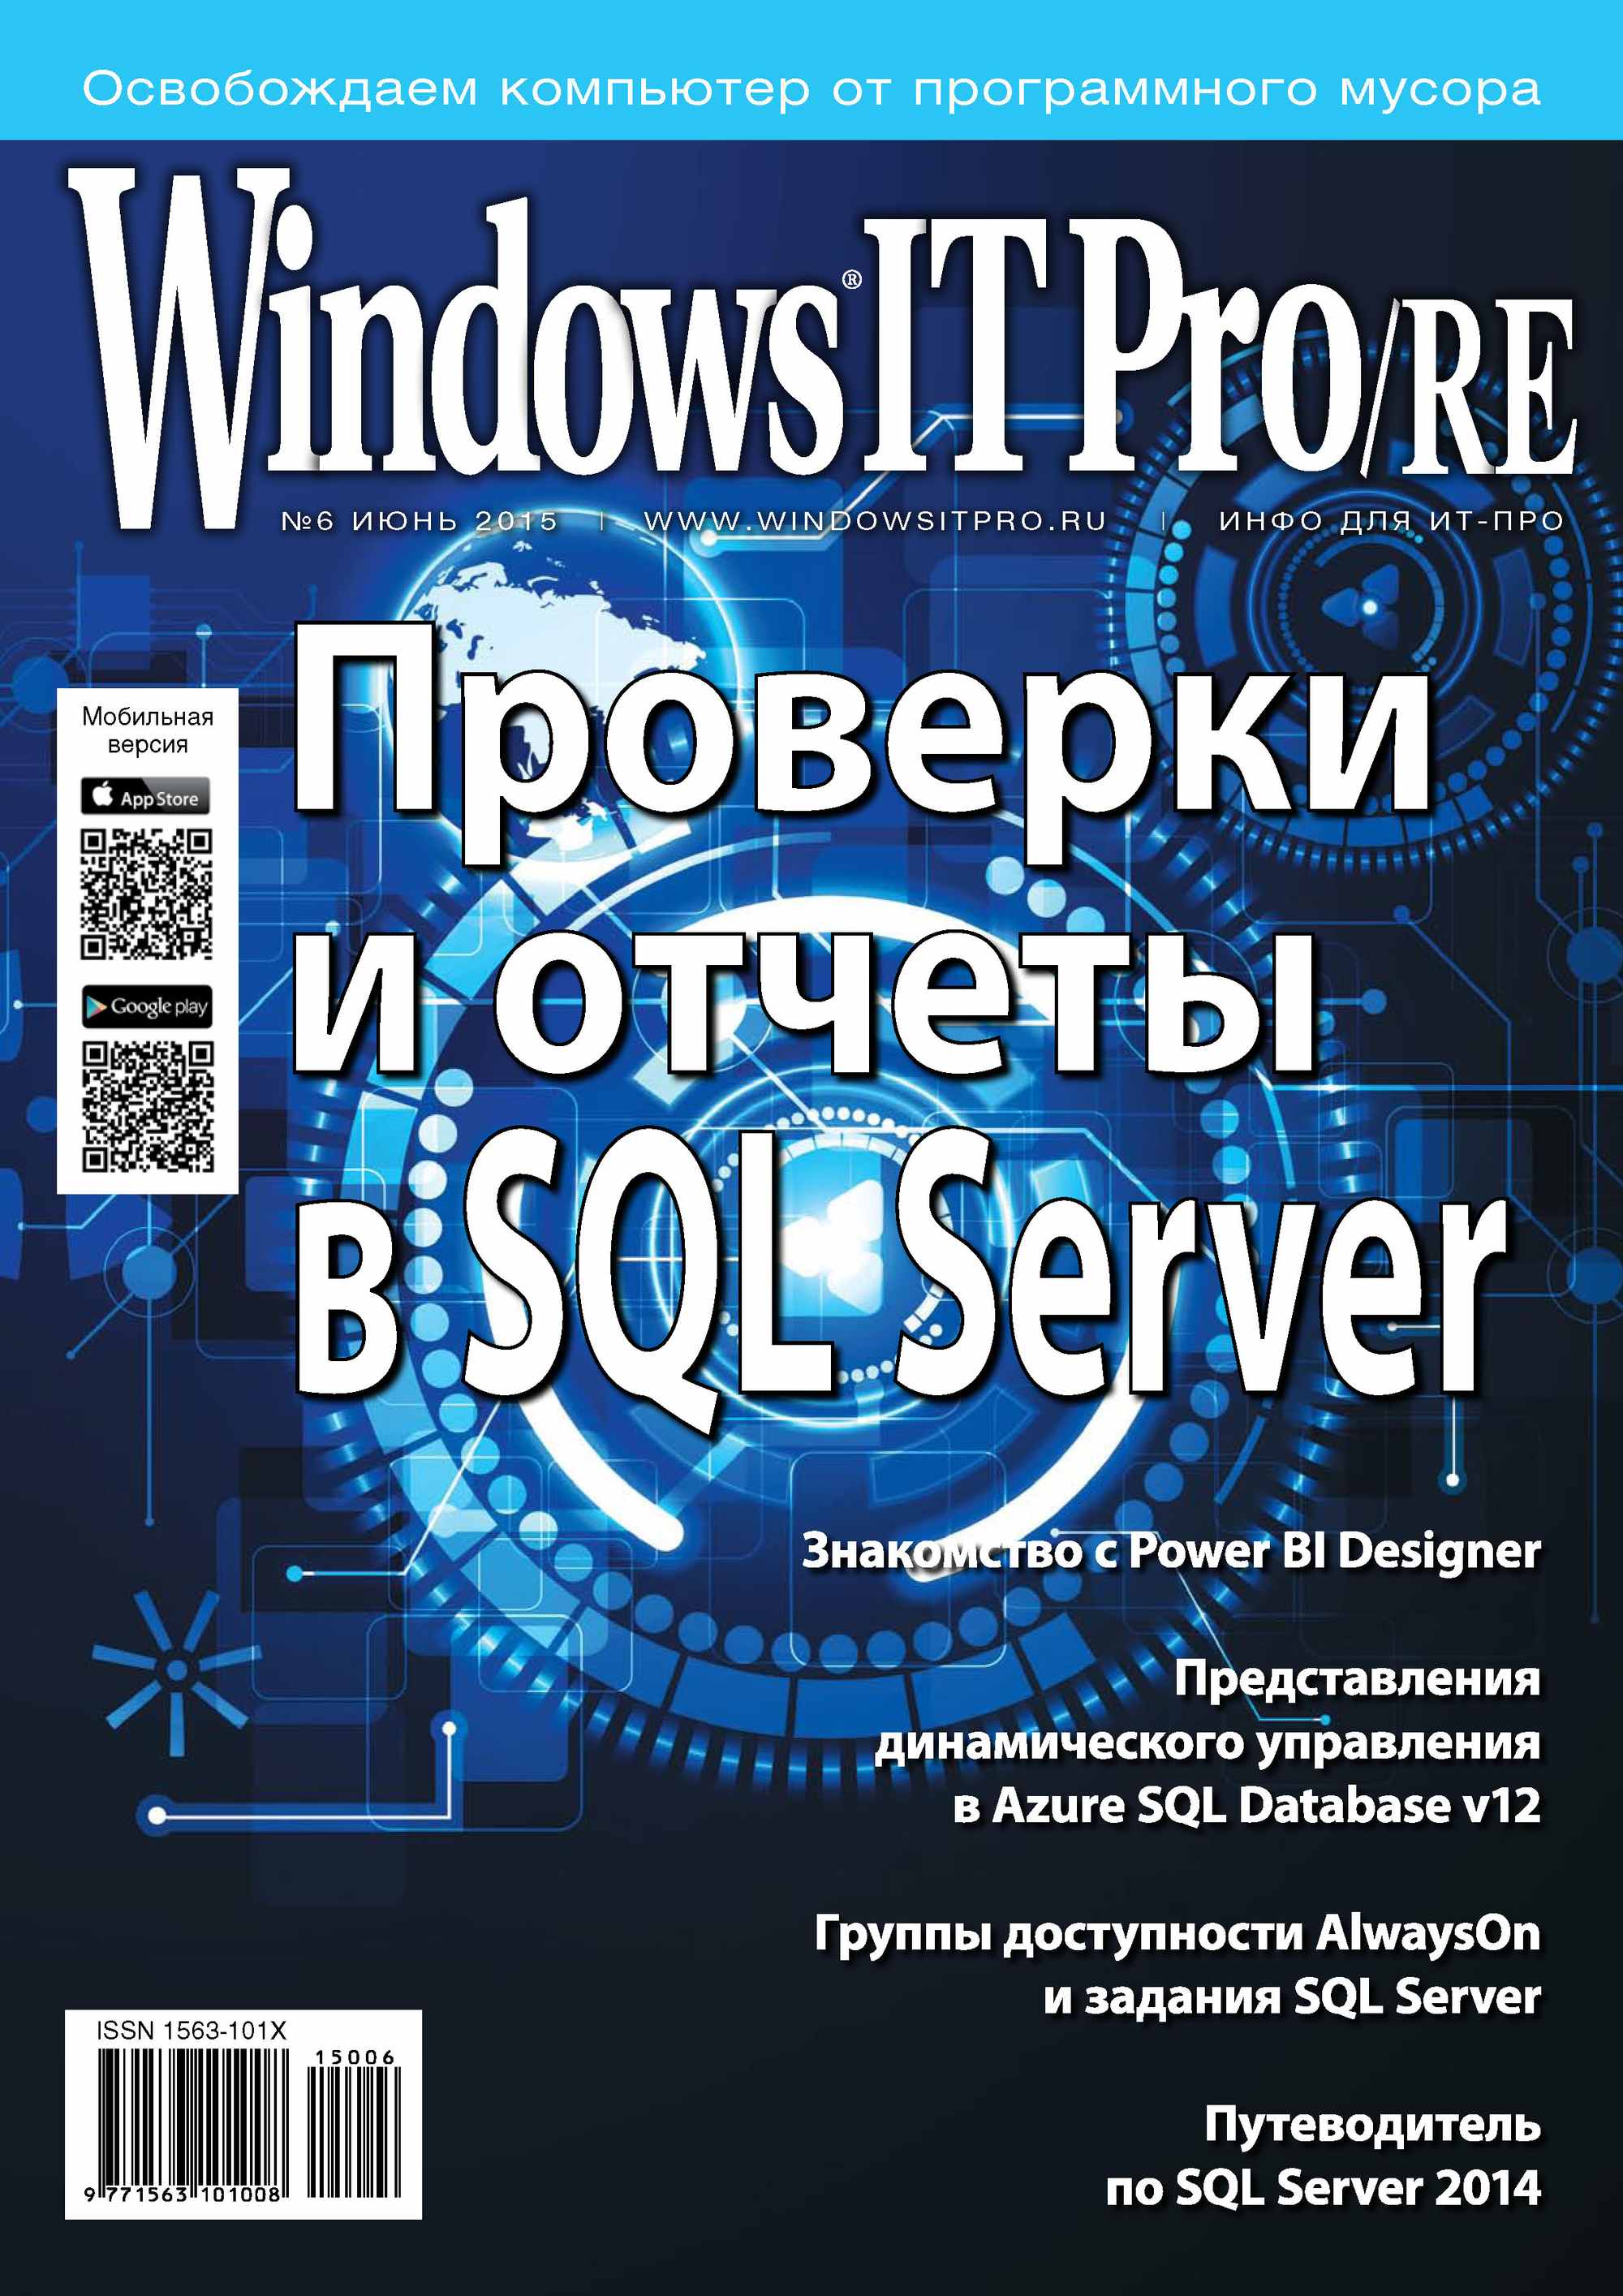 Windows IT Pro/RE№06/2015